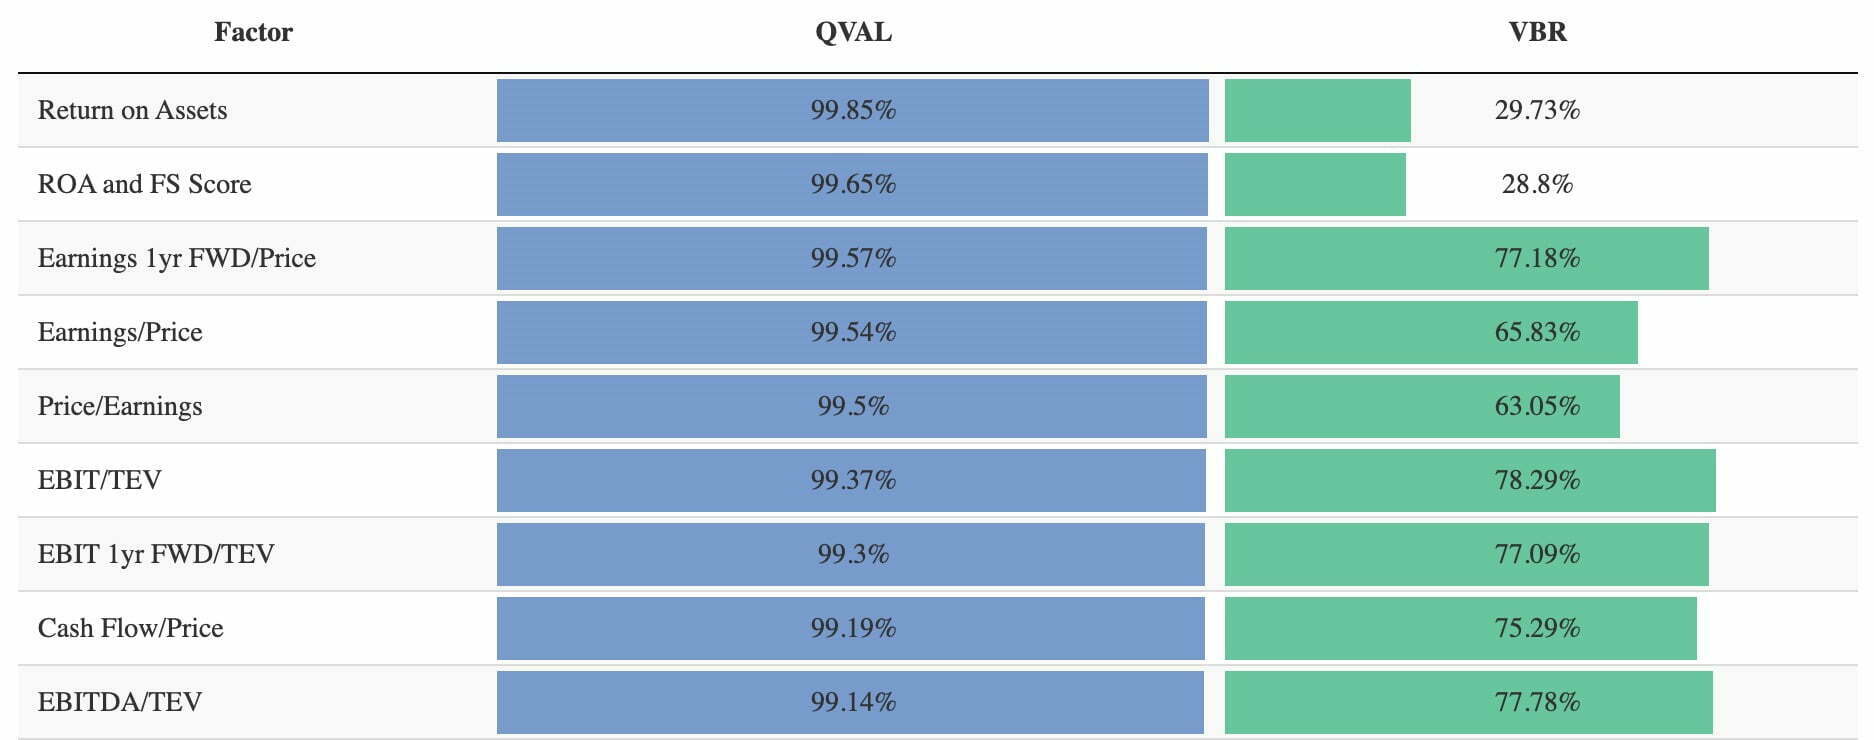 QVAL ETF vs VBR ETF Factor Comparisons 